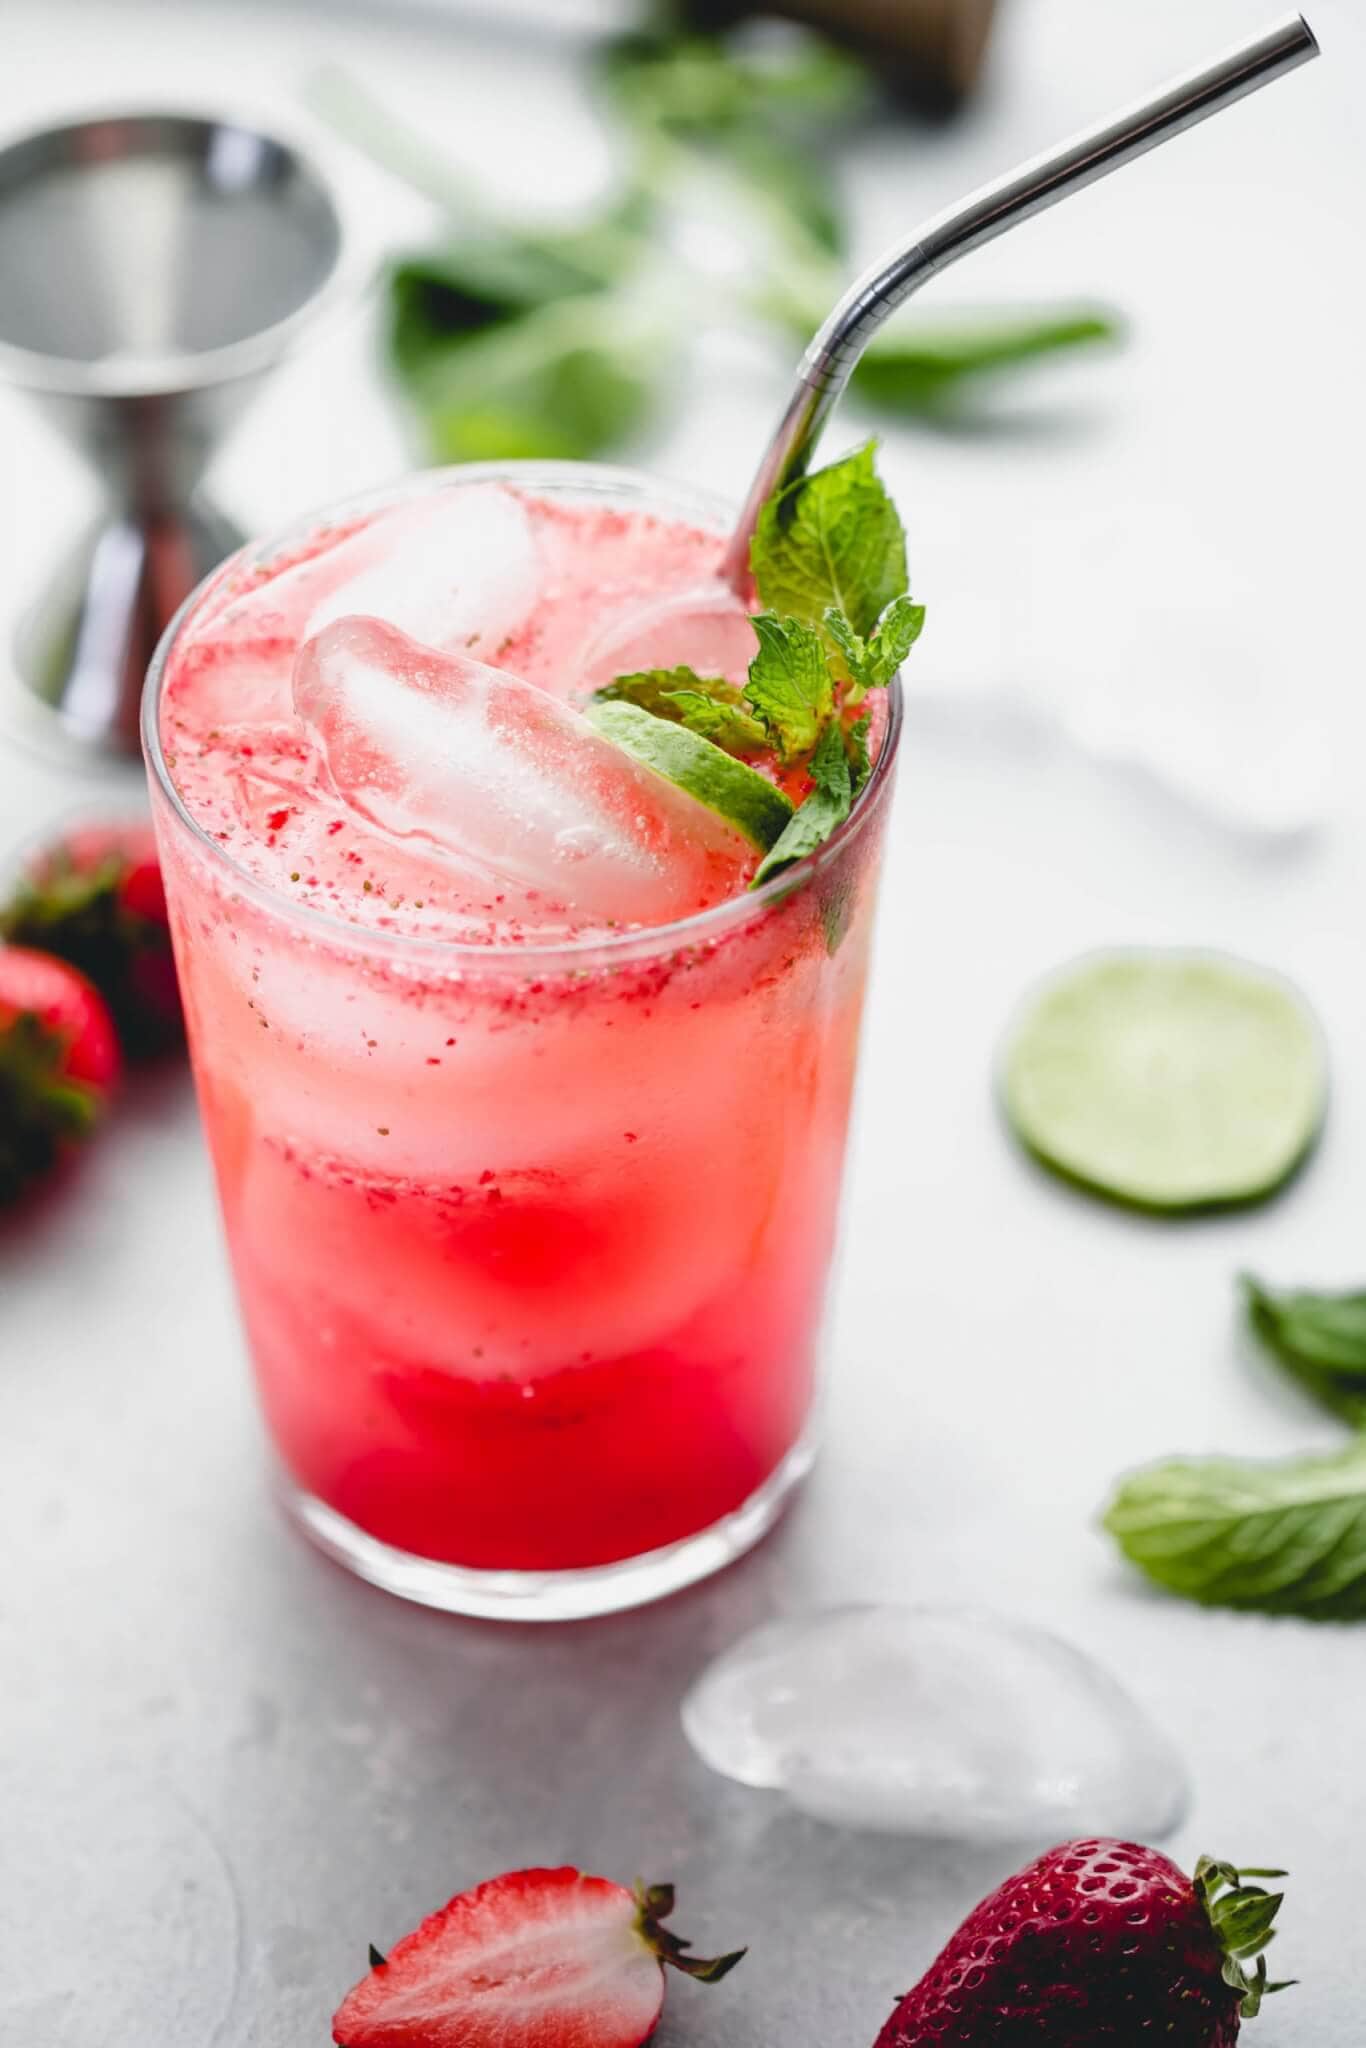 strawberry mojito recipe in a glass with a straw